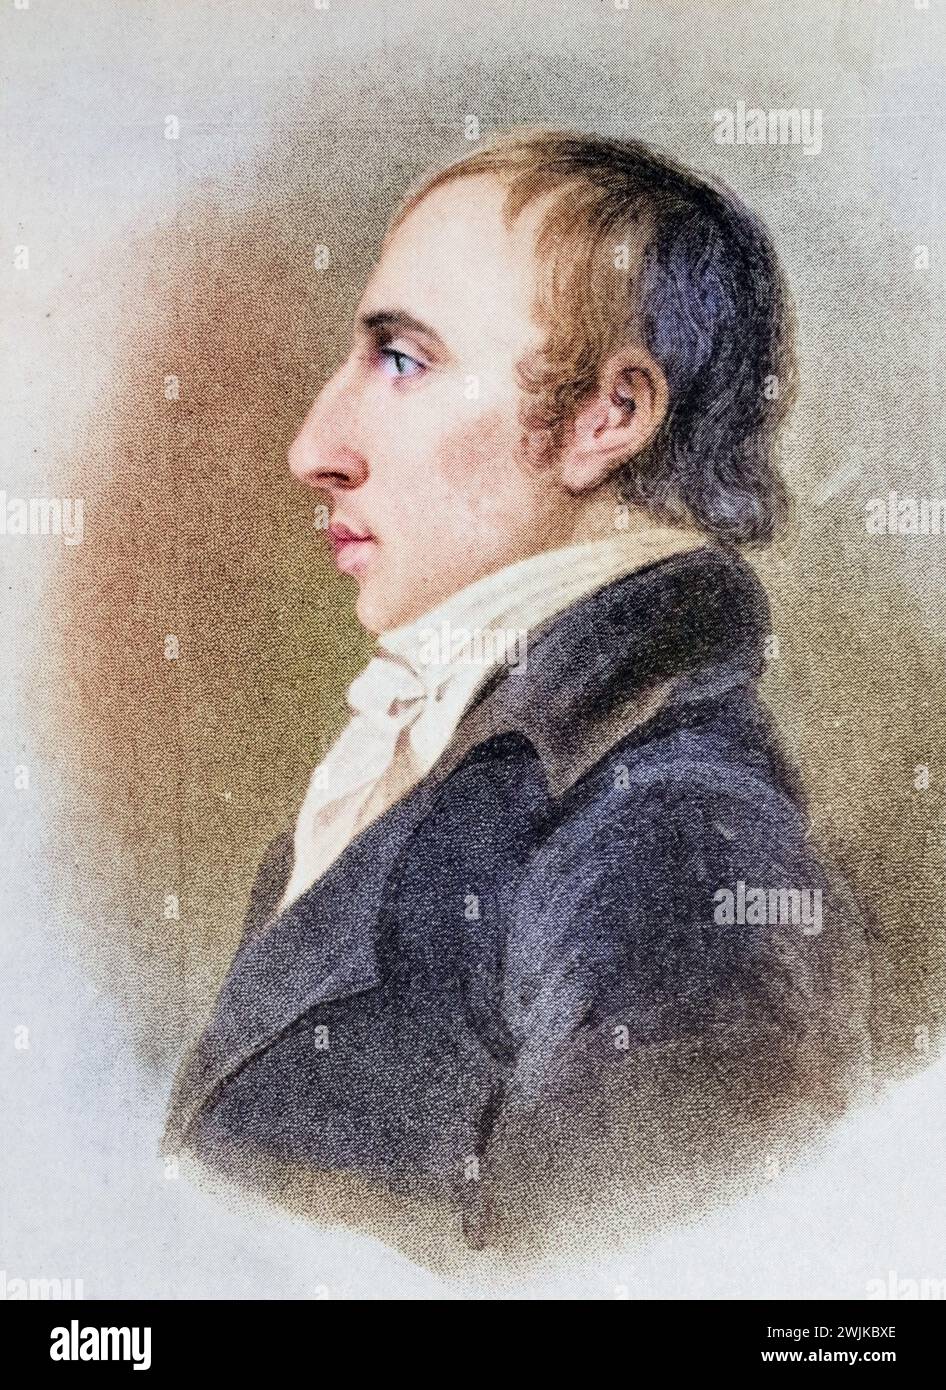 William Wordsworth (geb. 7. April 1770 in Cockermouth; gest. 23. April 1850) war ein britischer Dichter und führendes Mitglied der englischen Romantikbewegung, Historisch, digital restaurierte Reproduktion von einer Vorlage aus dem 19. Jahrhundert, Datum nicht angegeben Stockfoto